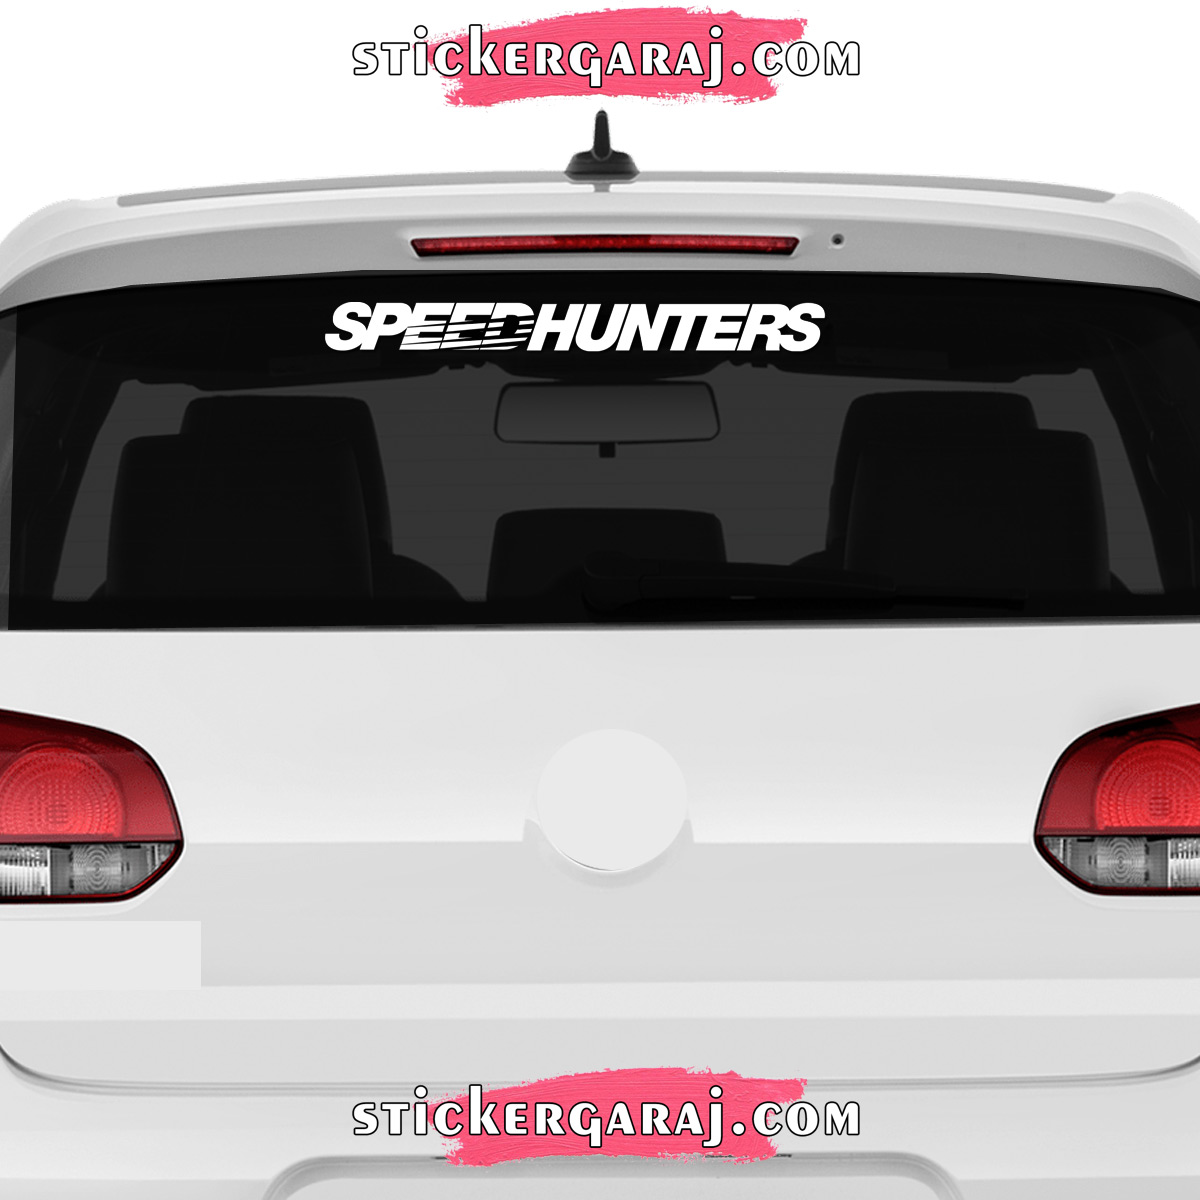 Fiat cam sticker - Fiat cam sticker - speedhunters